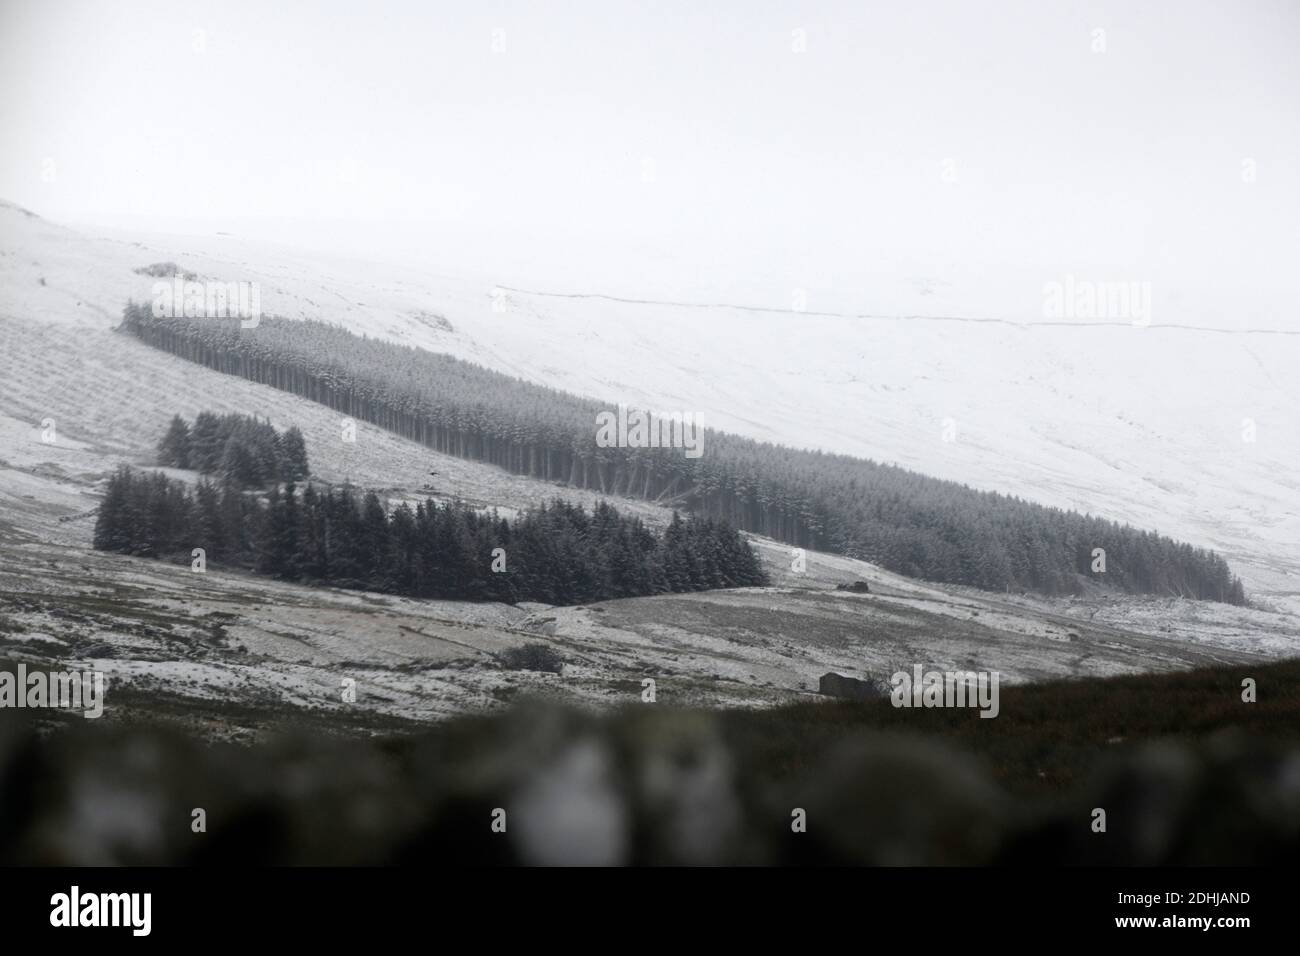 Nella foto è raffigurata una scena innevata nello Yorkshire Dales sopra Hawes. Tempo neve neve neve neve neve inverno nevicata Foto Stock